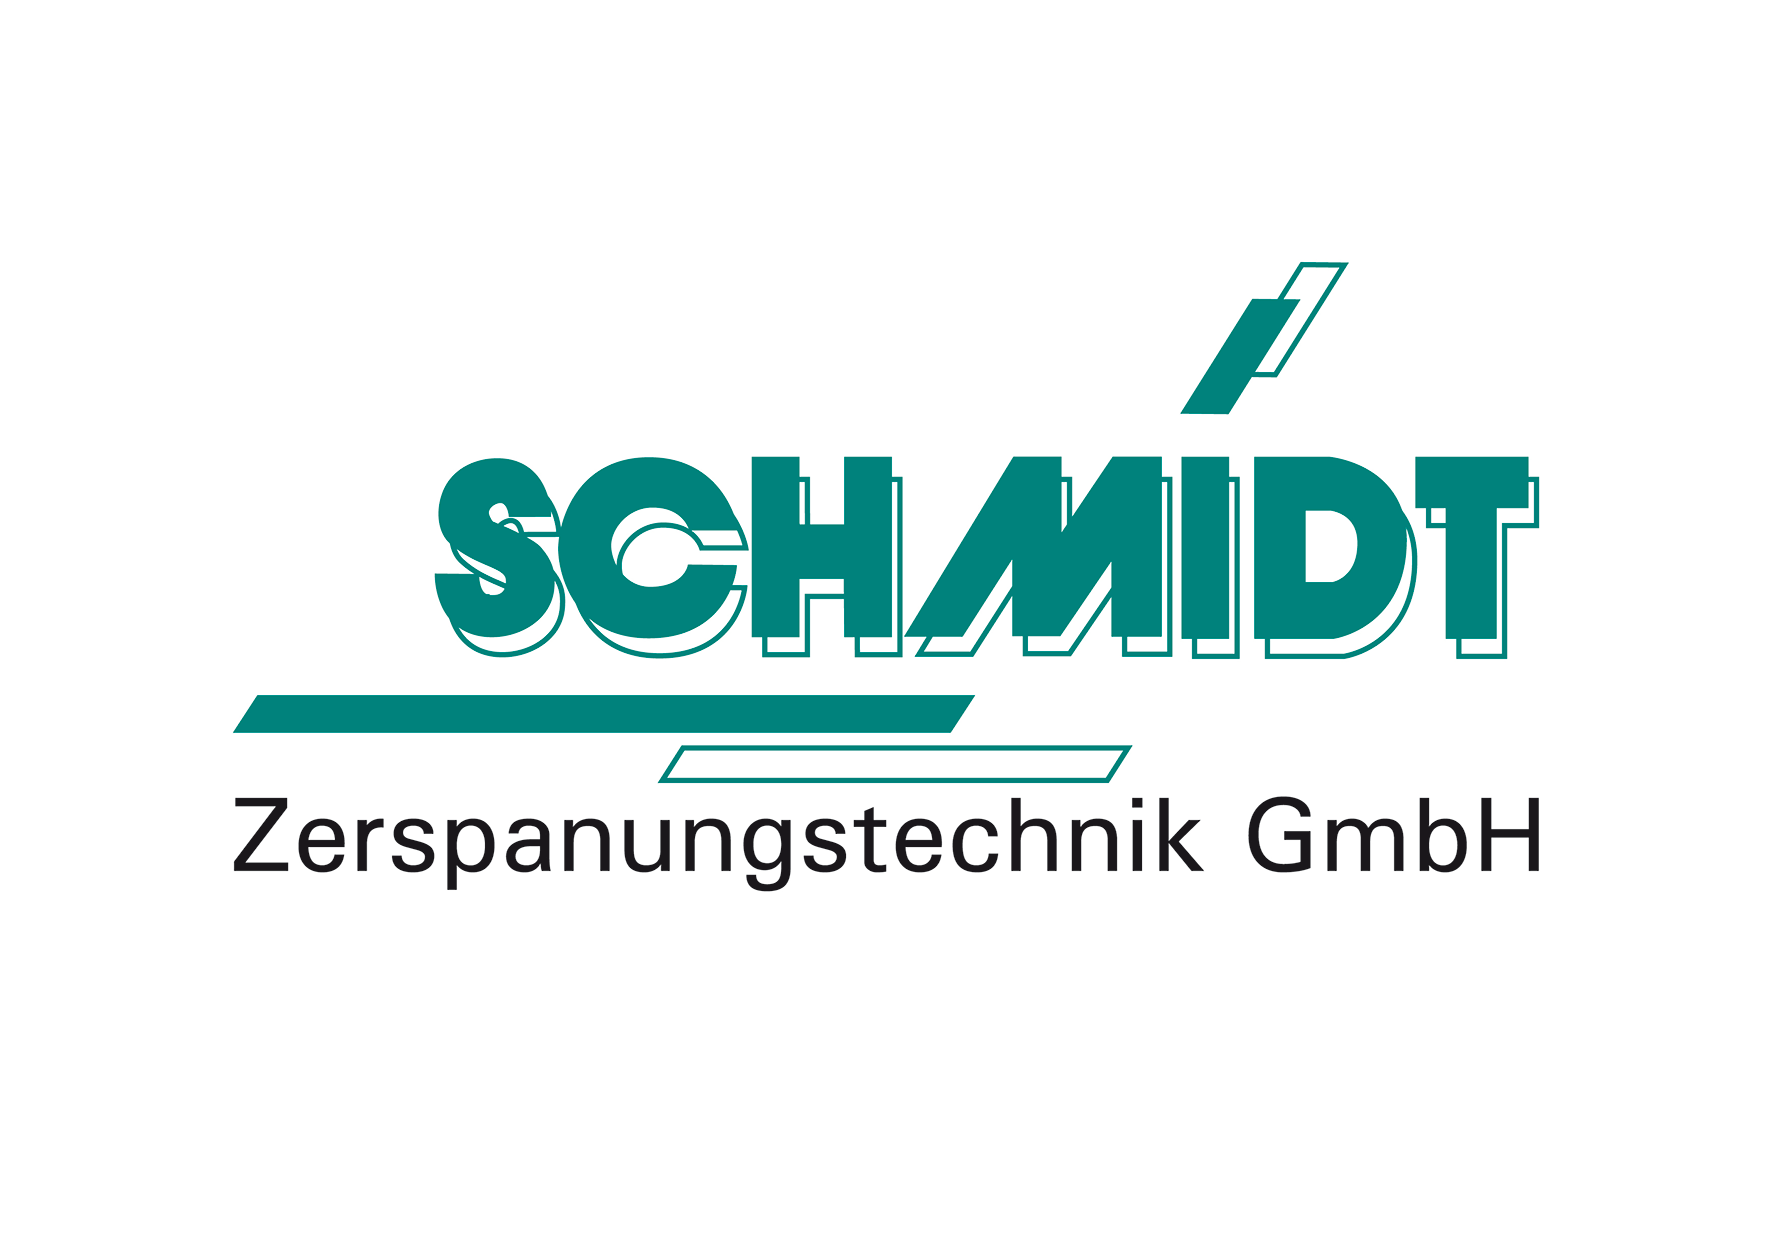 Schmidt Zerspanungstechnik GmbH